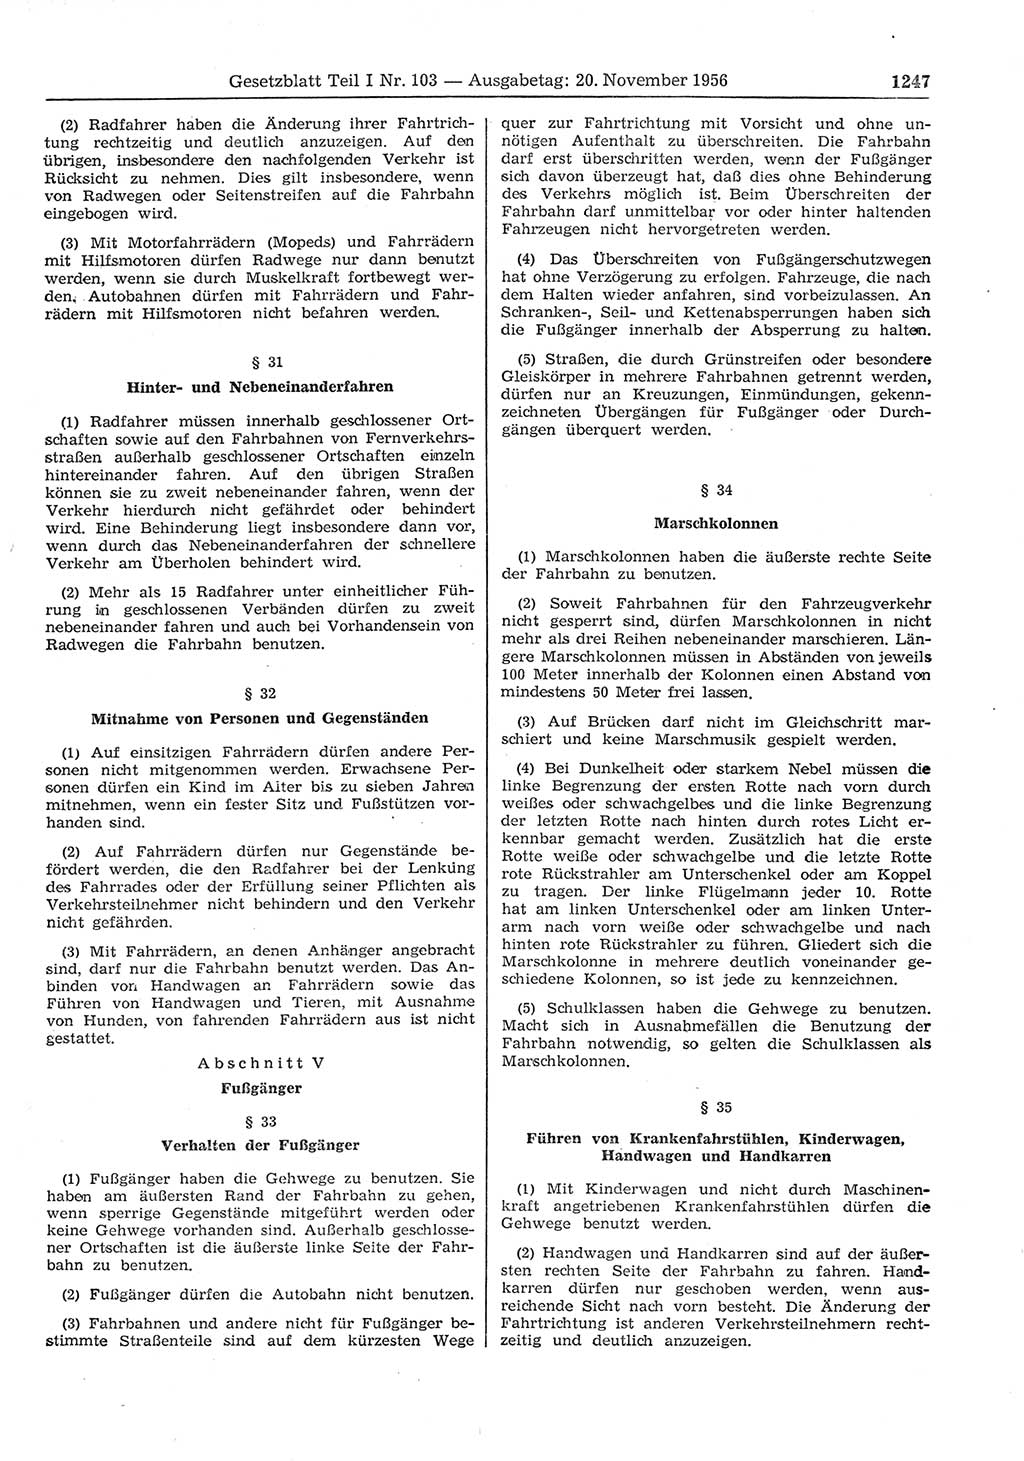 Gesetzblatt (GBl.) der Deutschen Demokratischen Republik (DDR) Teil Ⅰ 1956, Seite 1247 (GBl. DDR Ⅰ 1956, S. 1247)